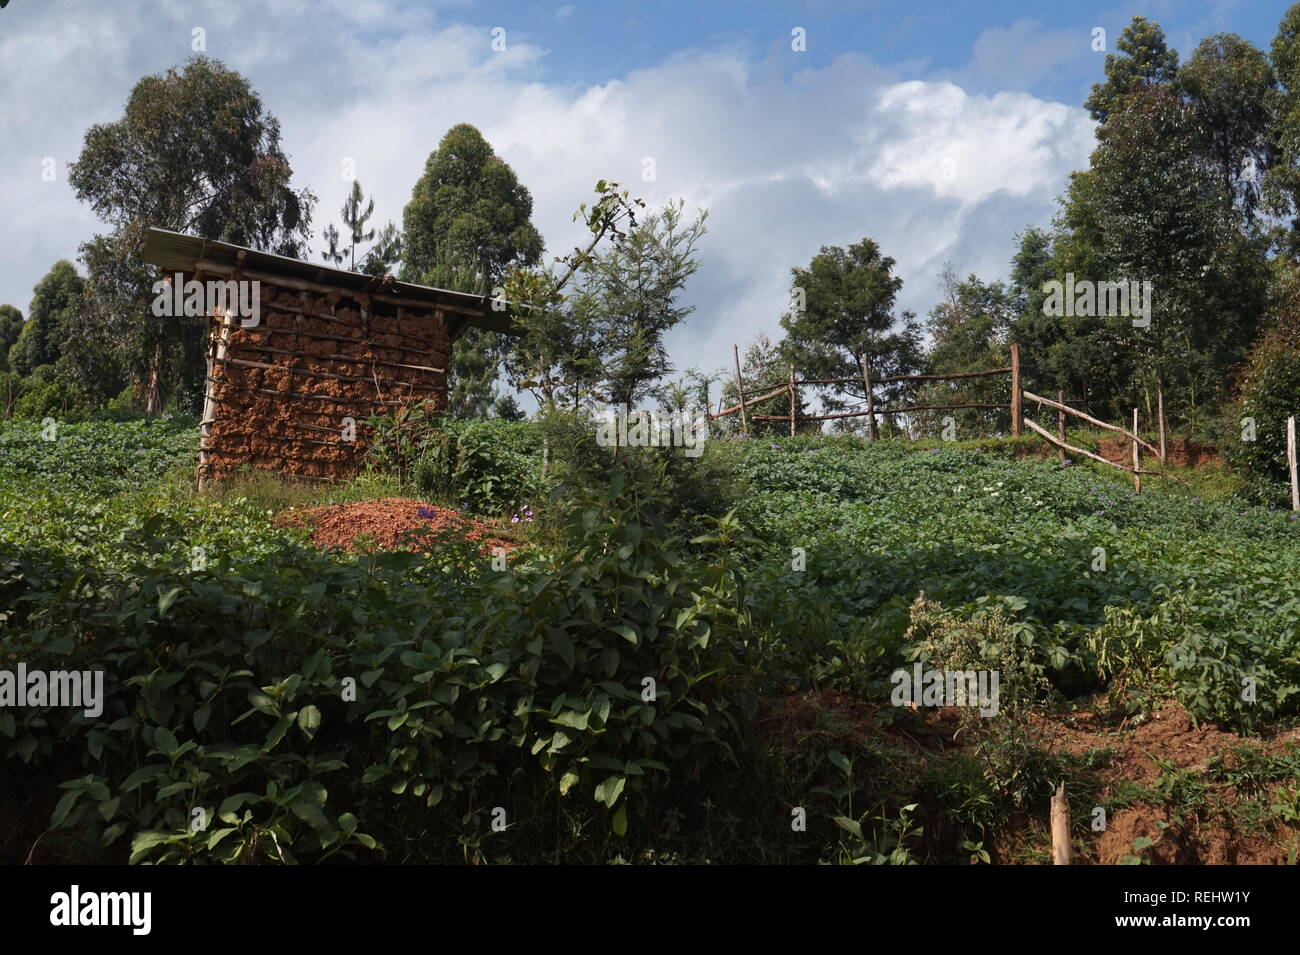 A farmworker's hut in a small farmstead, Uganda Stock Photo